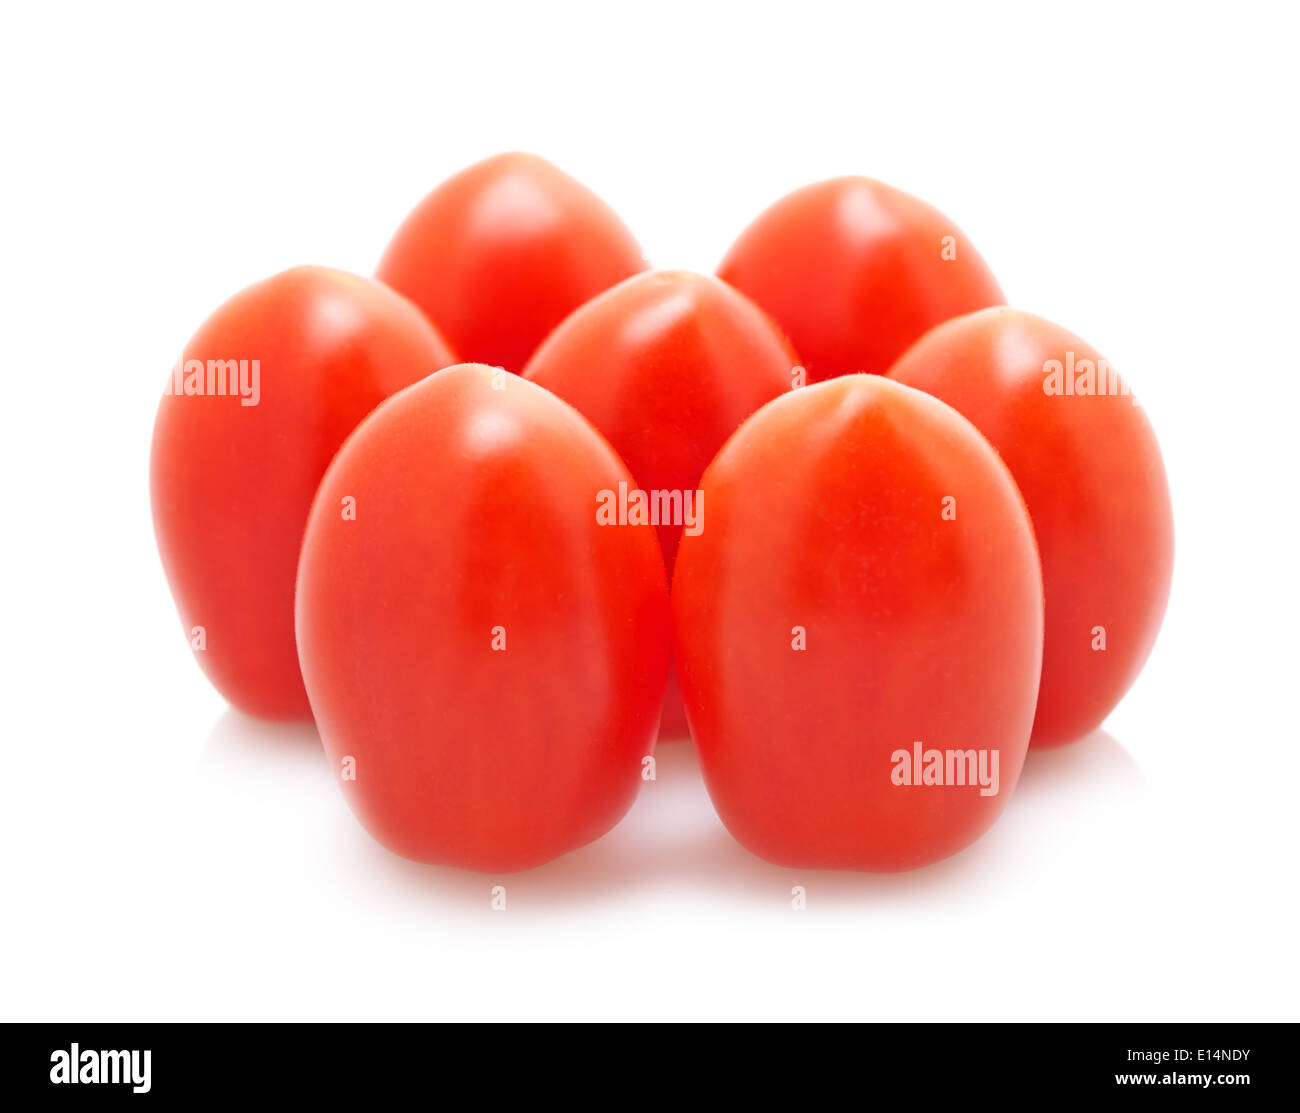 Pomodori di piccole dimensioni su uno sfondo bianco isolato Foto Stock